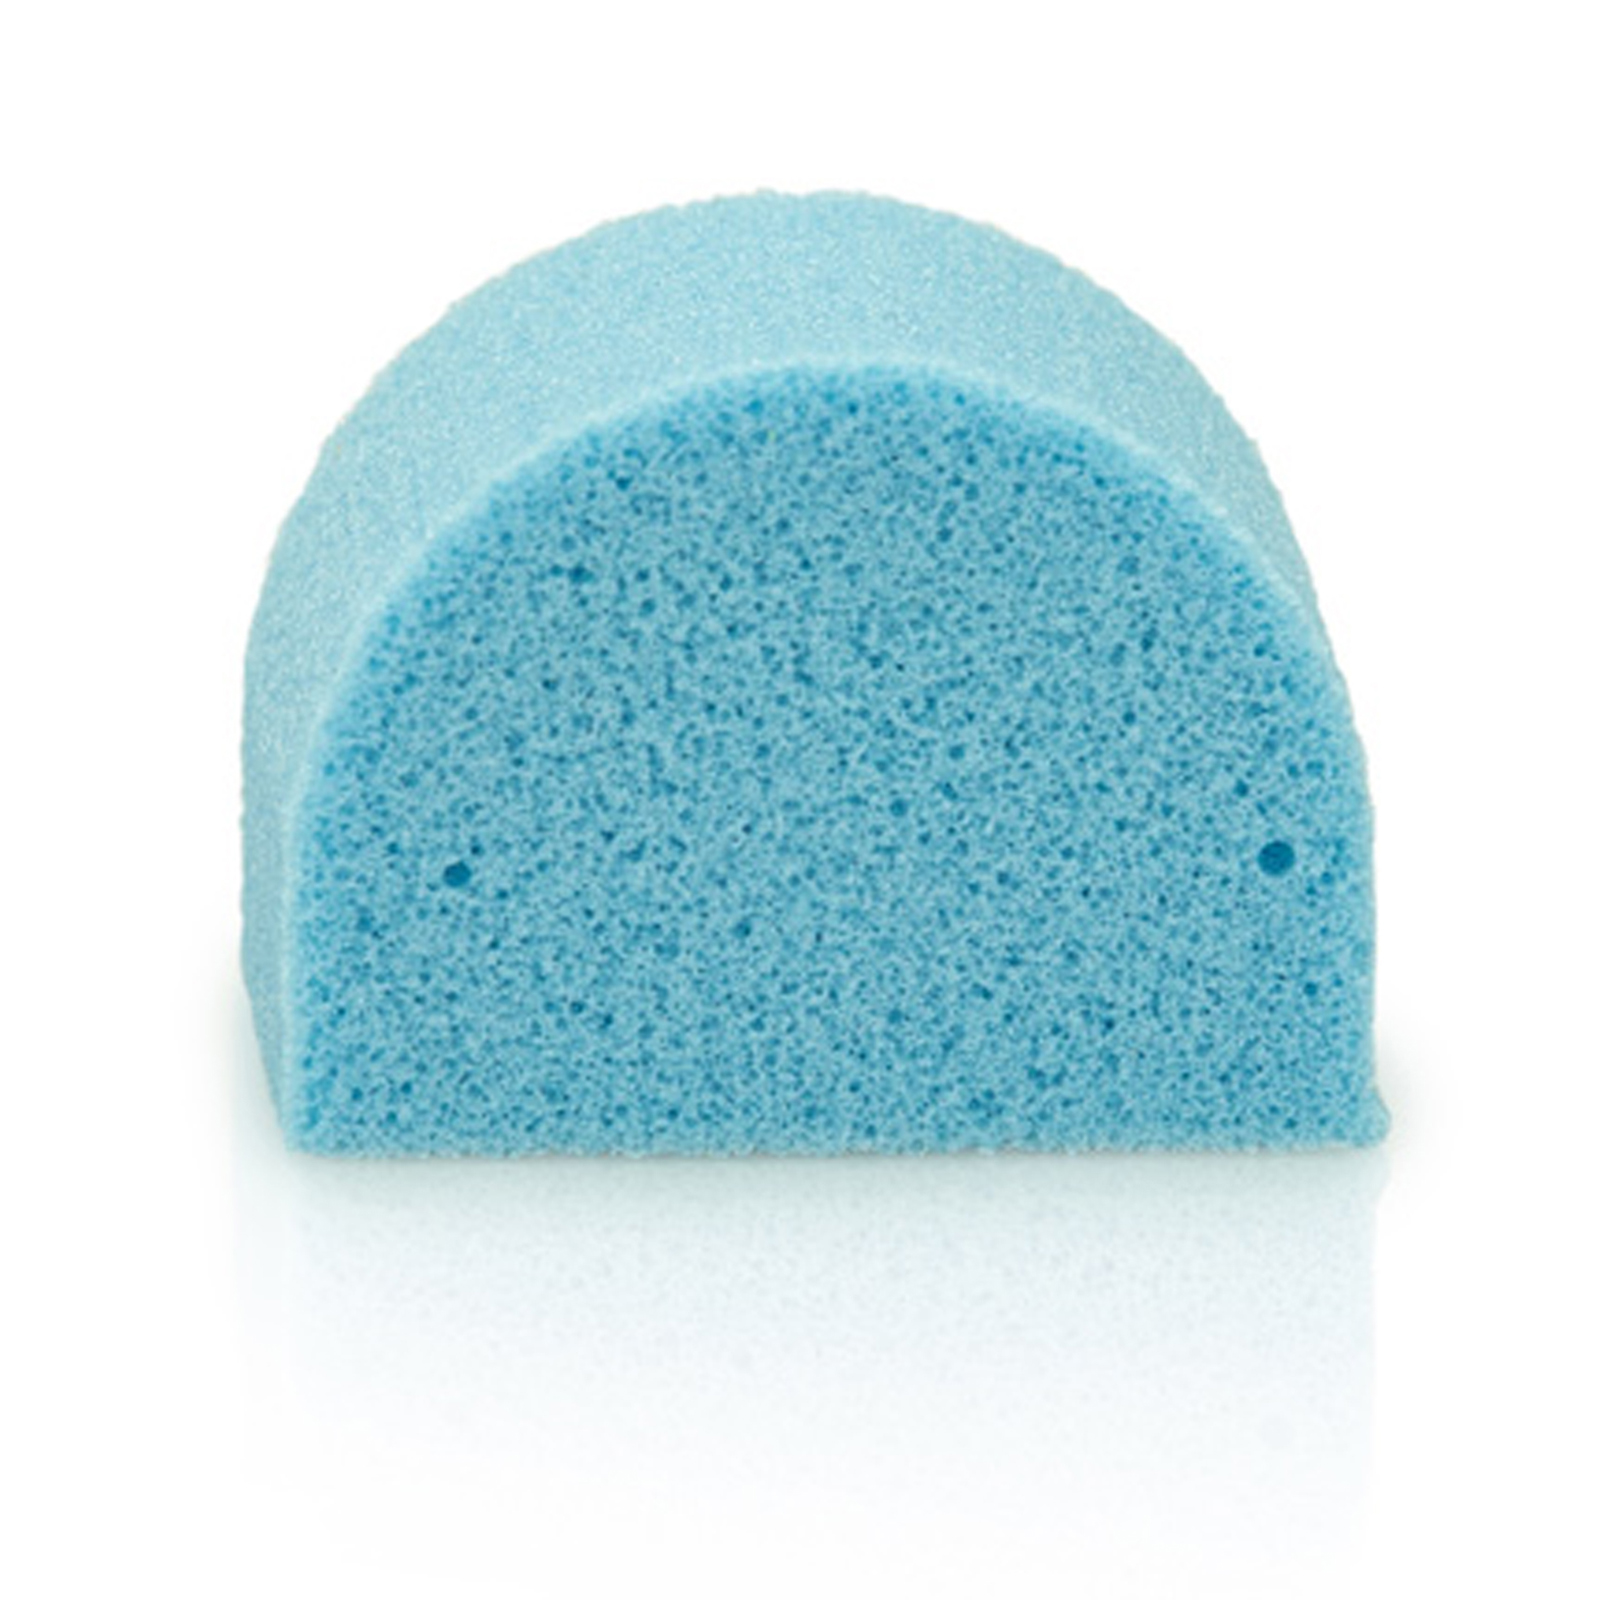 Nosepad set, blue (soft), 5 pads